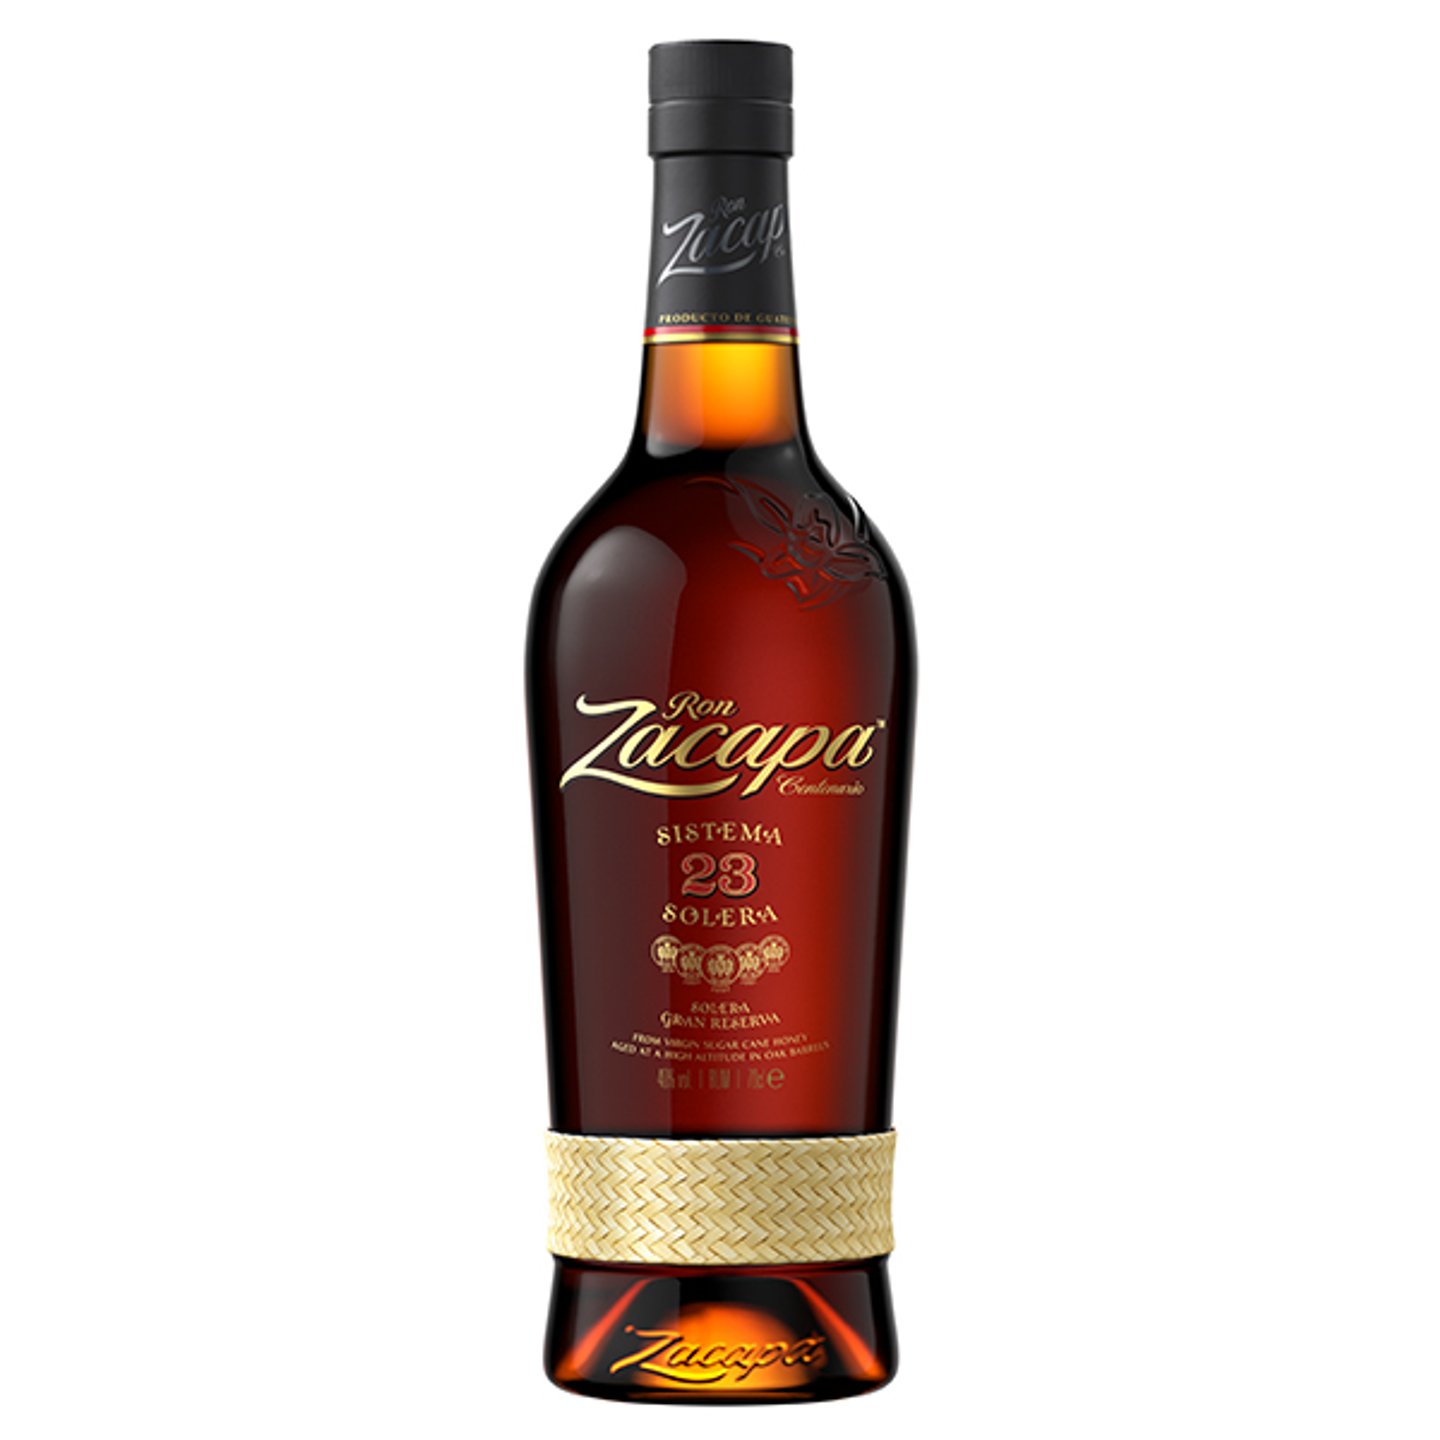 Ron Zacapa Centenario XO Solera Gran Reserva Especial Rum 750ml